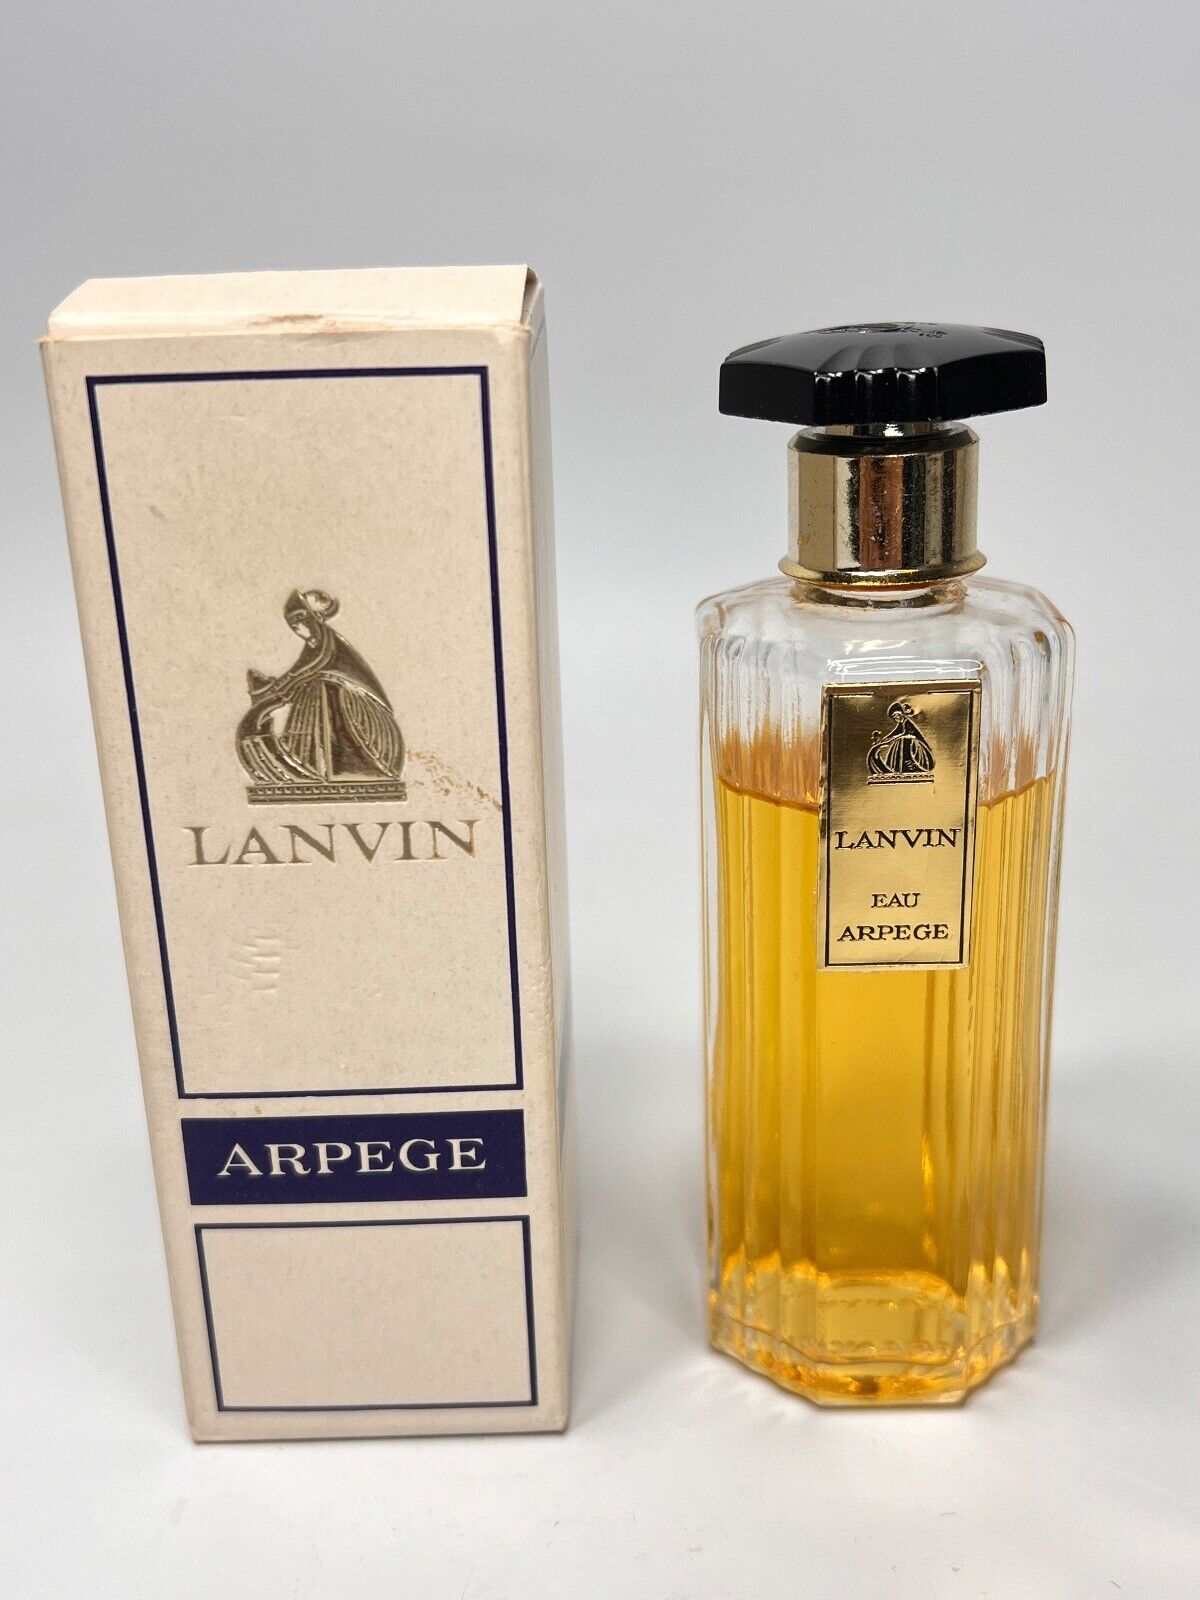 Vintage French Lanvin Arpege Perfume Bottle #810 Splash Eau de Toilette Boxed